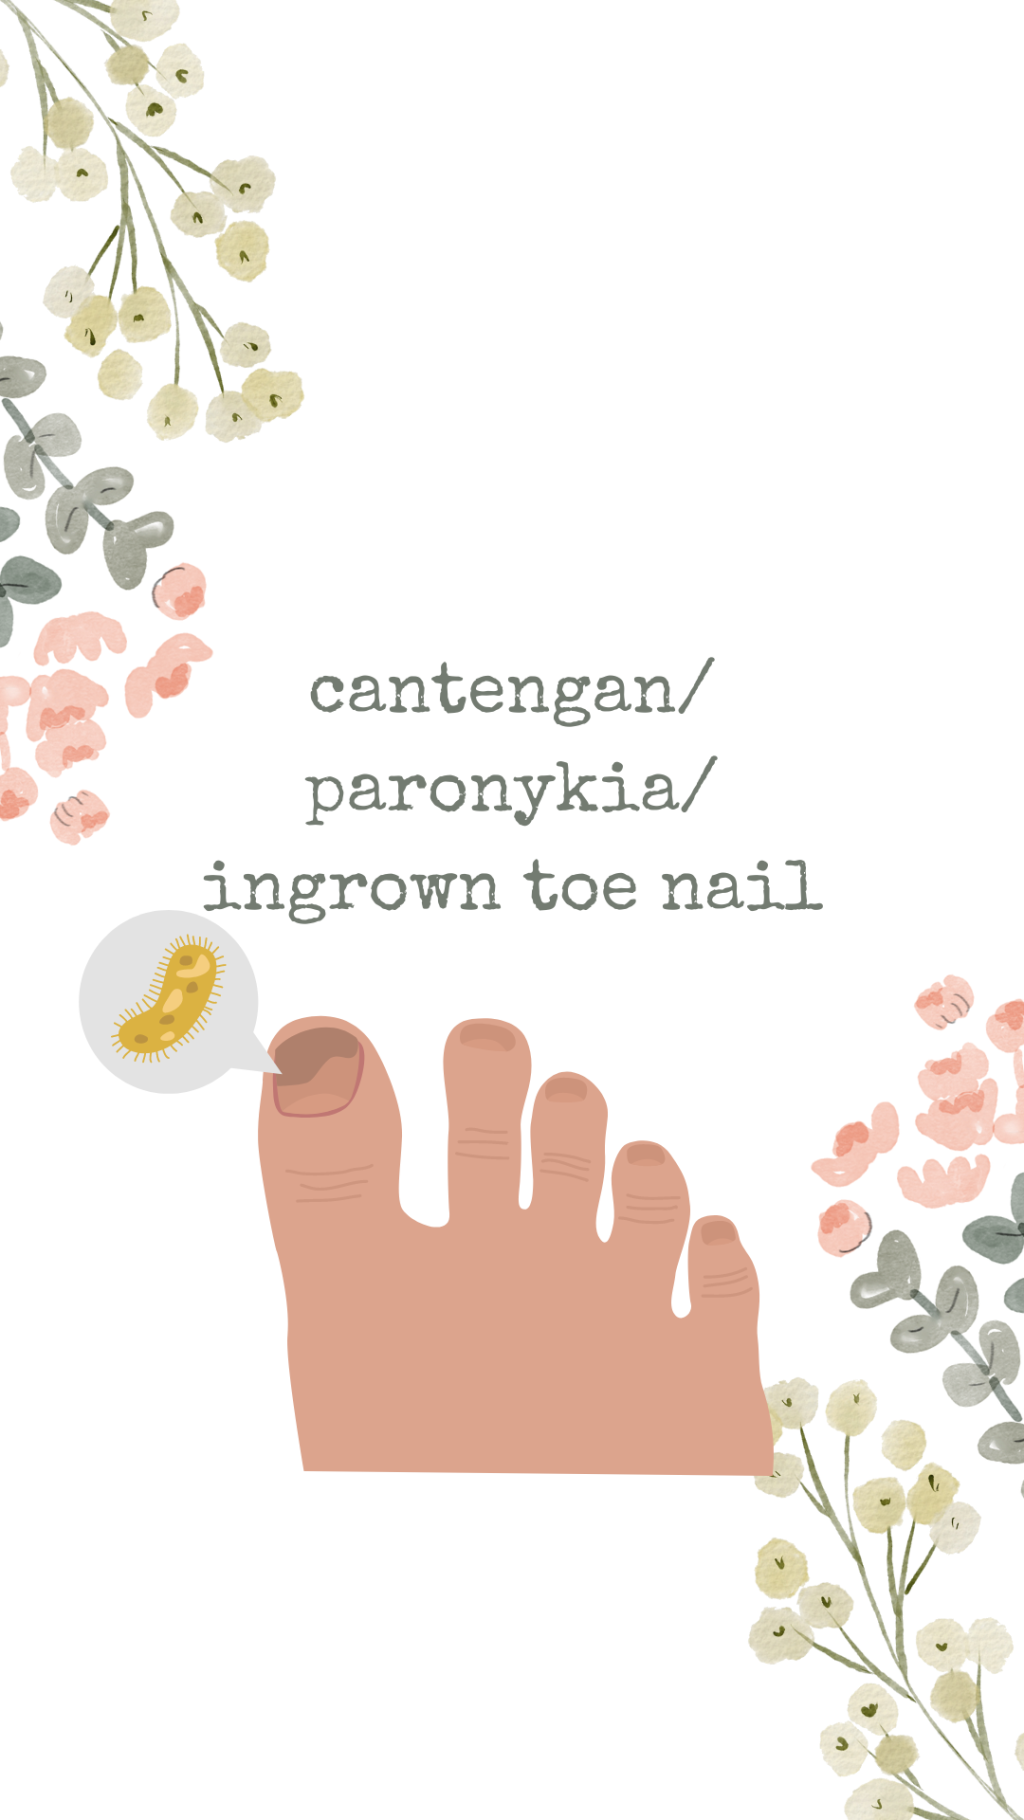 Ingrown toe nail / paronikia/Cantengan